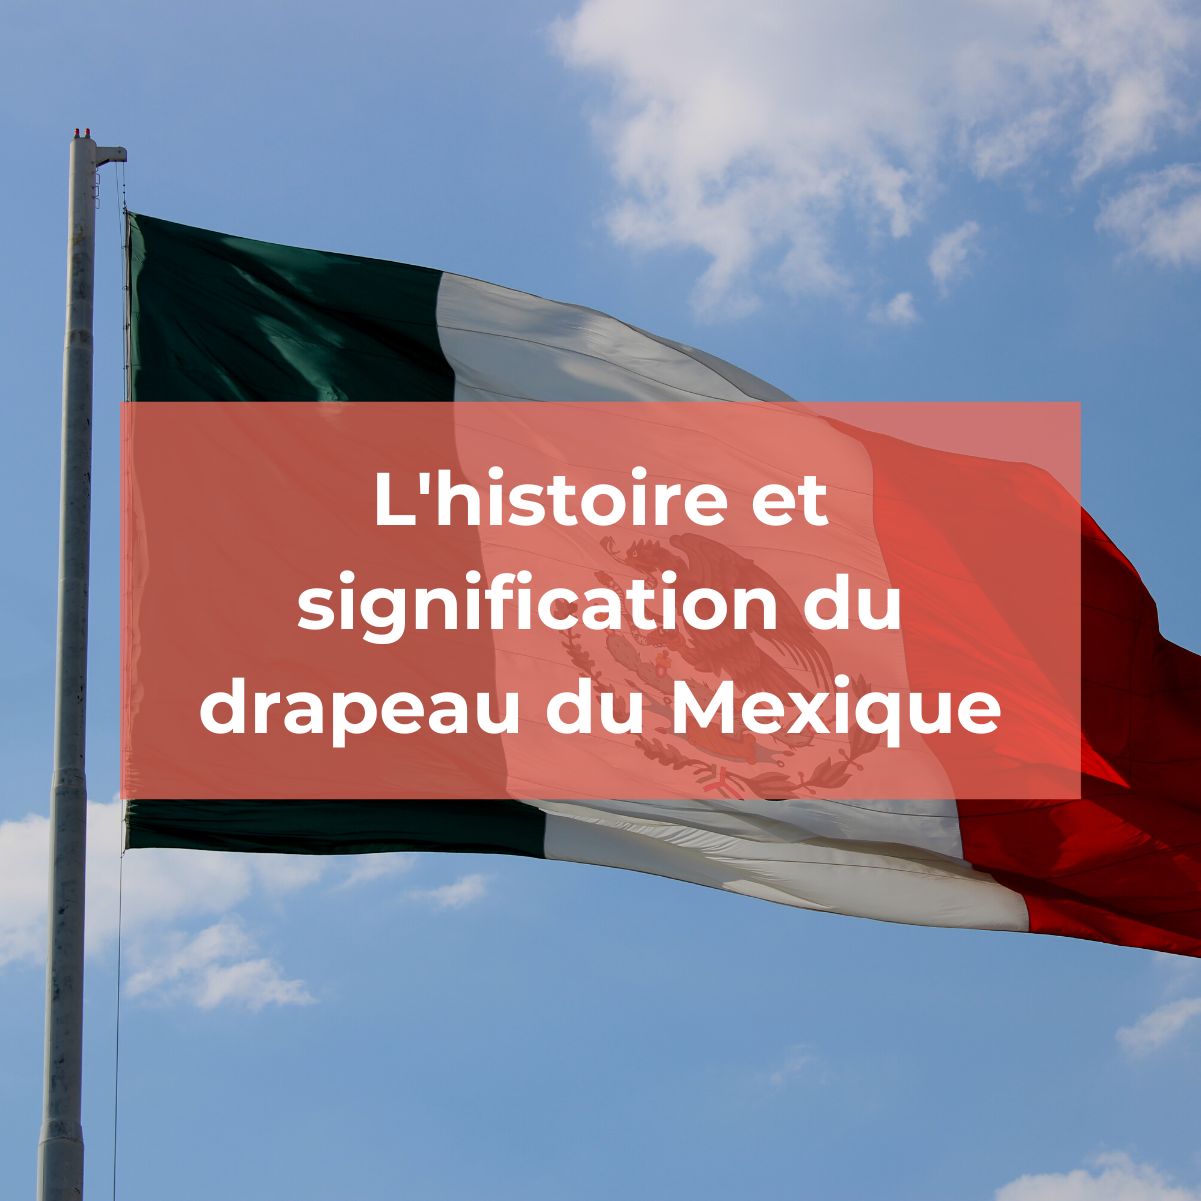 Quelle est la signification du drapeau national mexicain ?